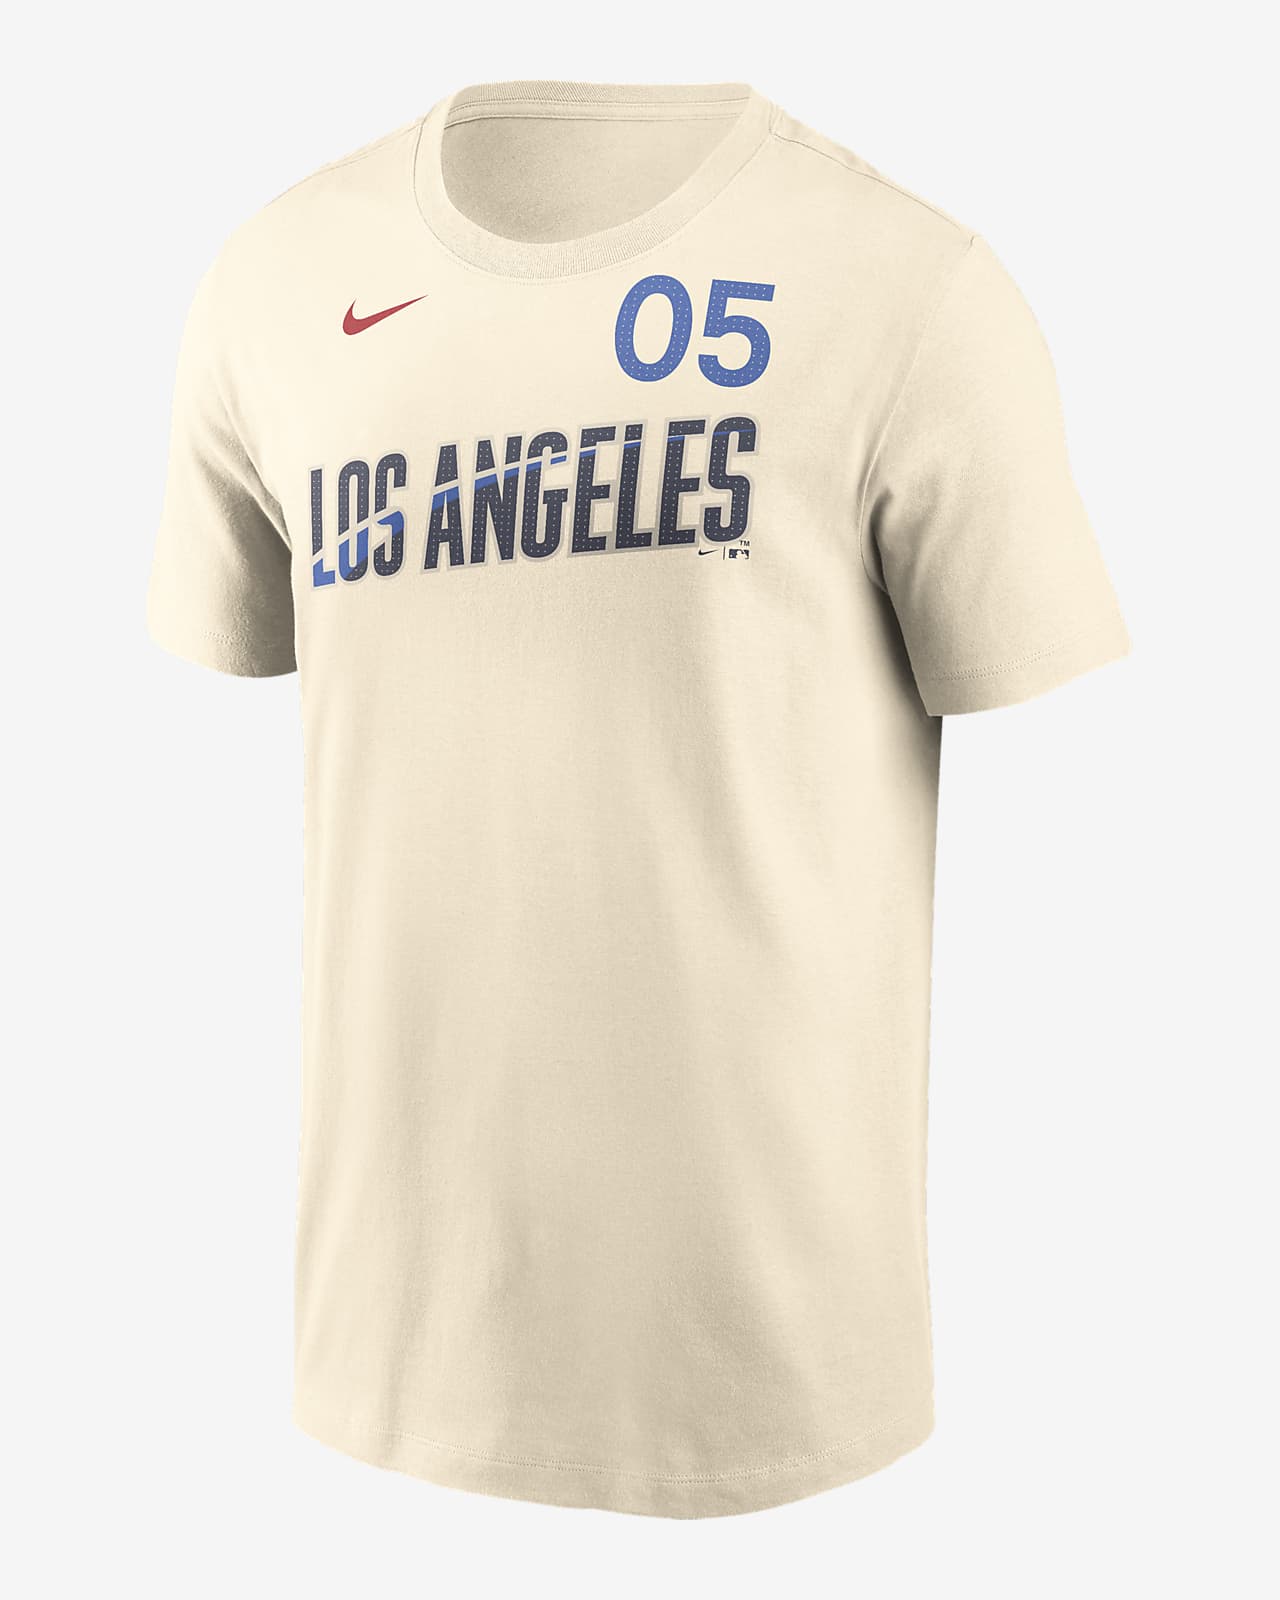 Playera Nike de la MLB para hombre Freddie Freeman Los Angeles Dodgers City Connect Fuse